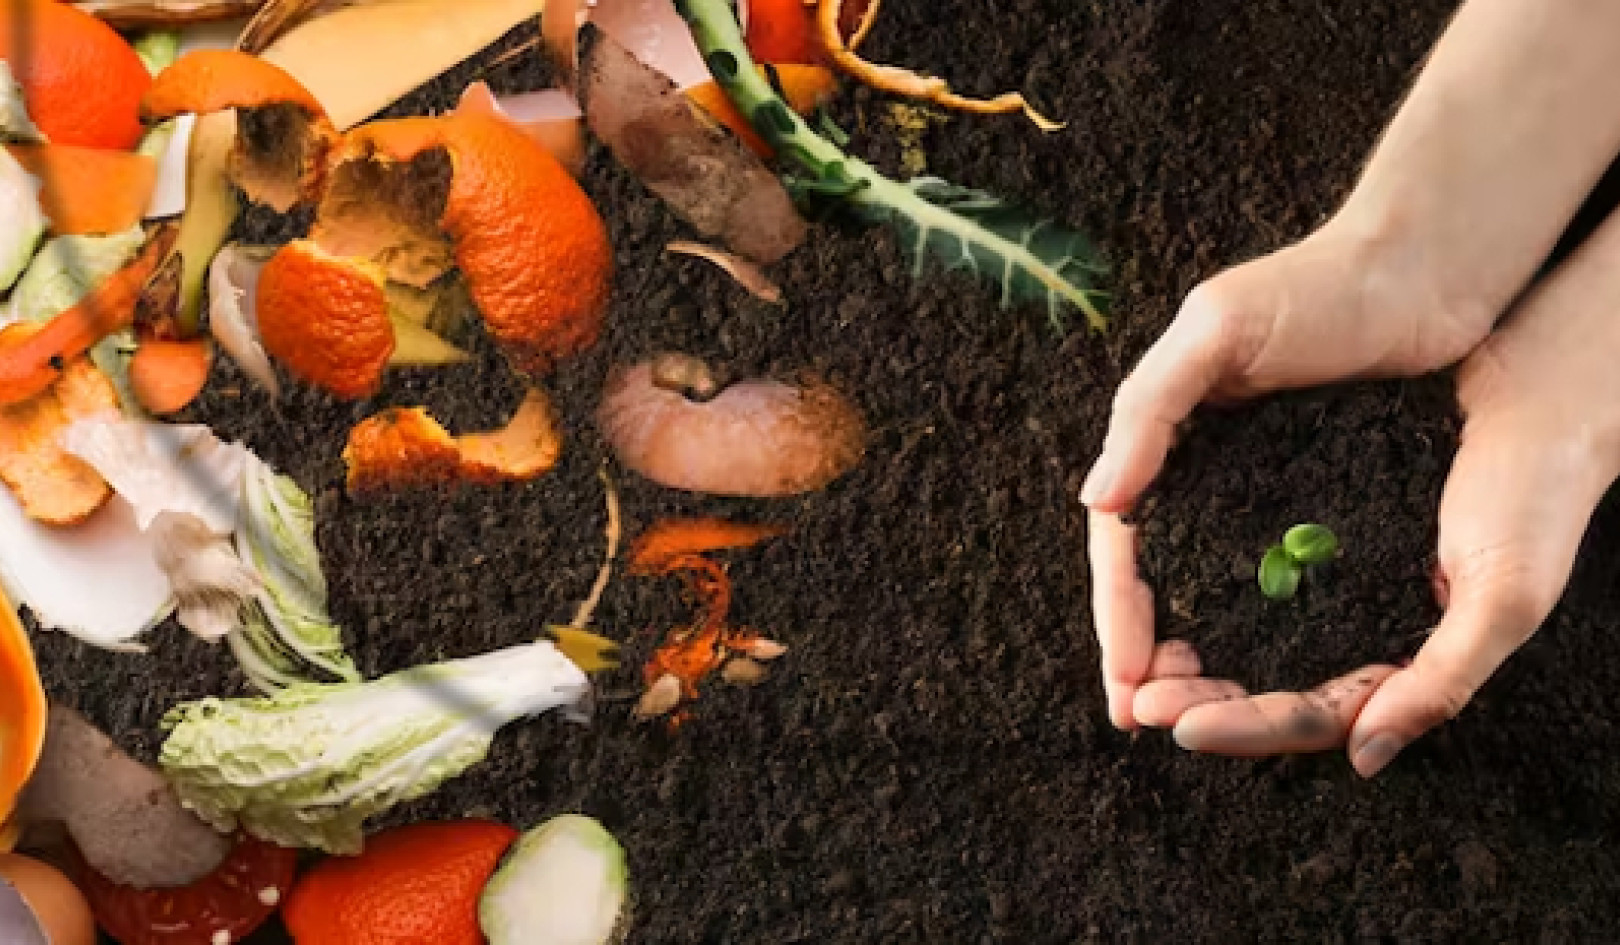 廃棄物から富へ: 食品廃棄物の堆肥化が埋立処分よりも優れている理由